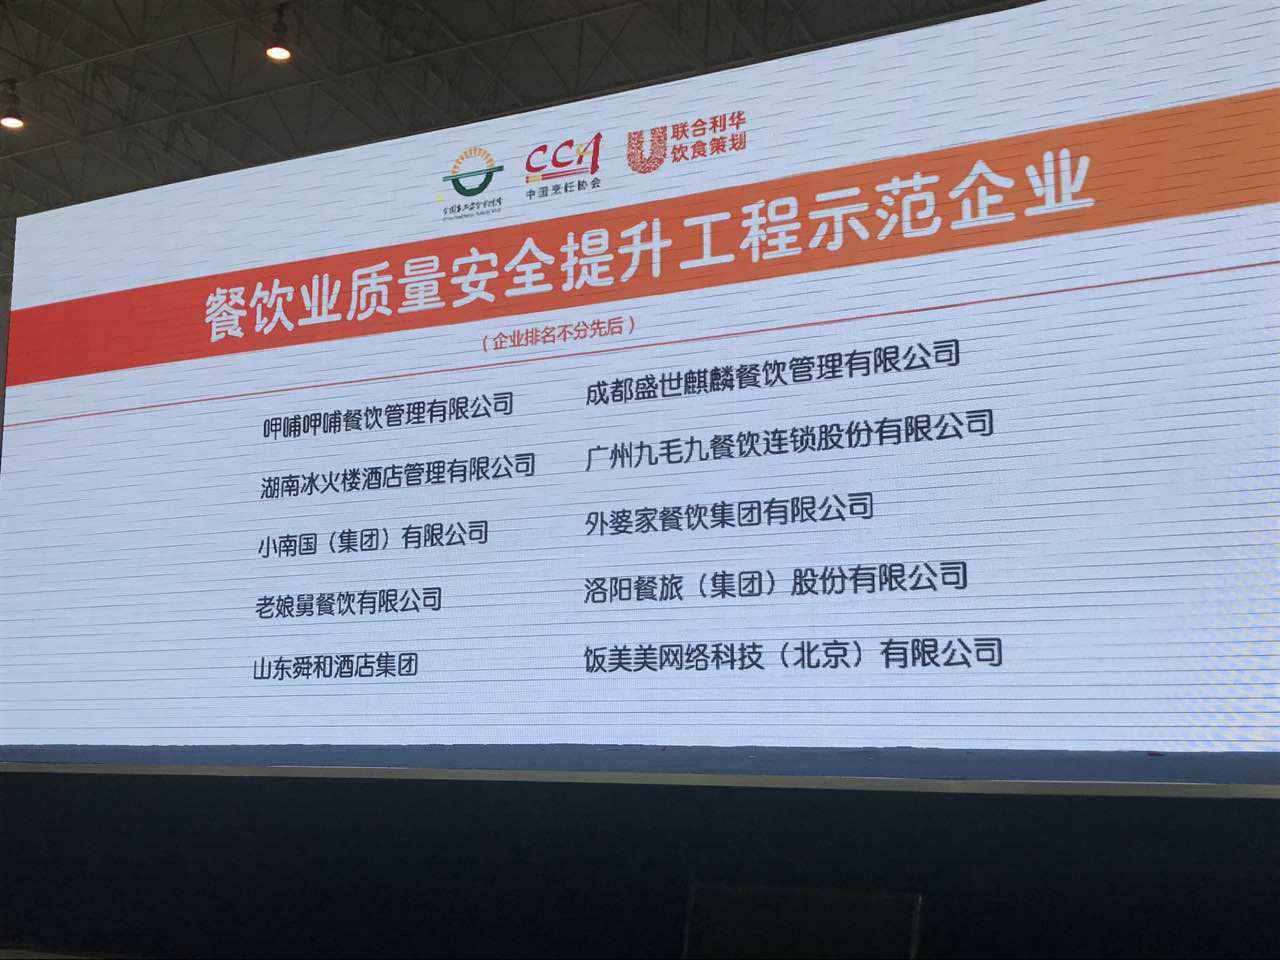 皇冠手机APP官网(中国)有限公司官网入选全国首批“餐饮业质量安全提升工程示范企业”